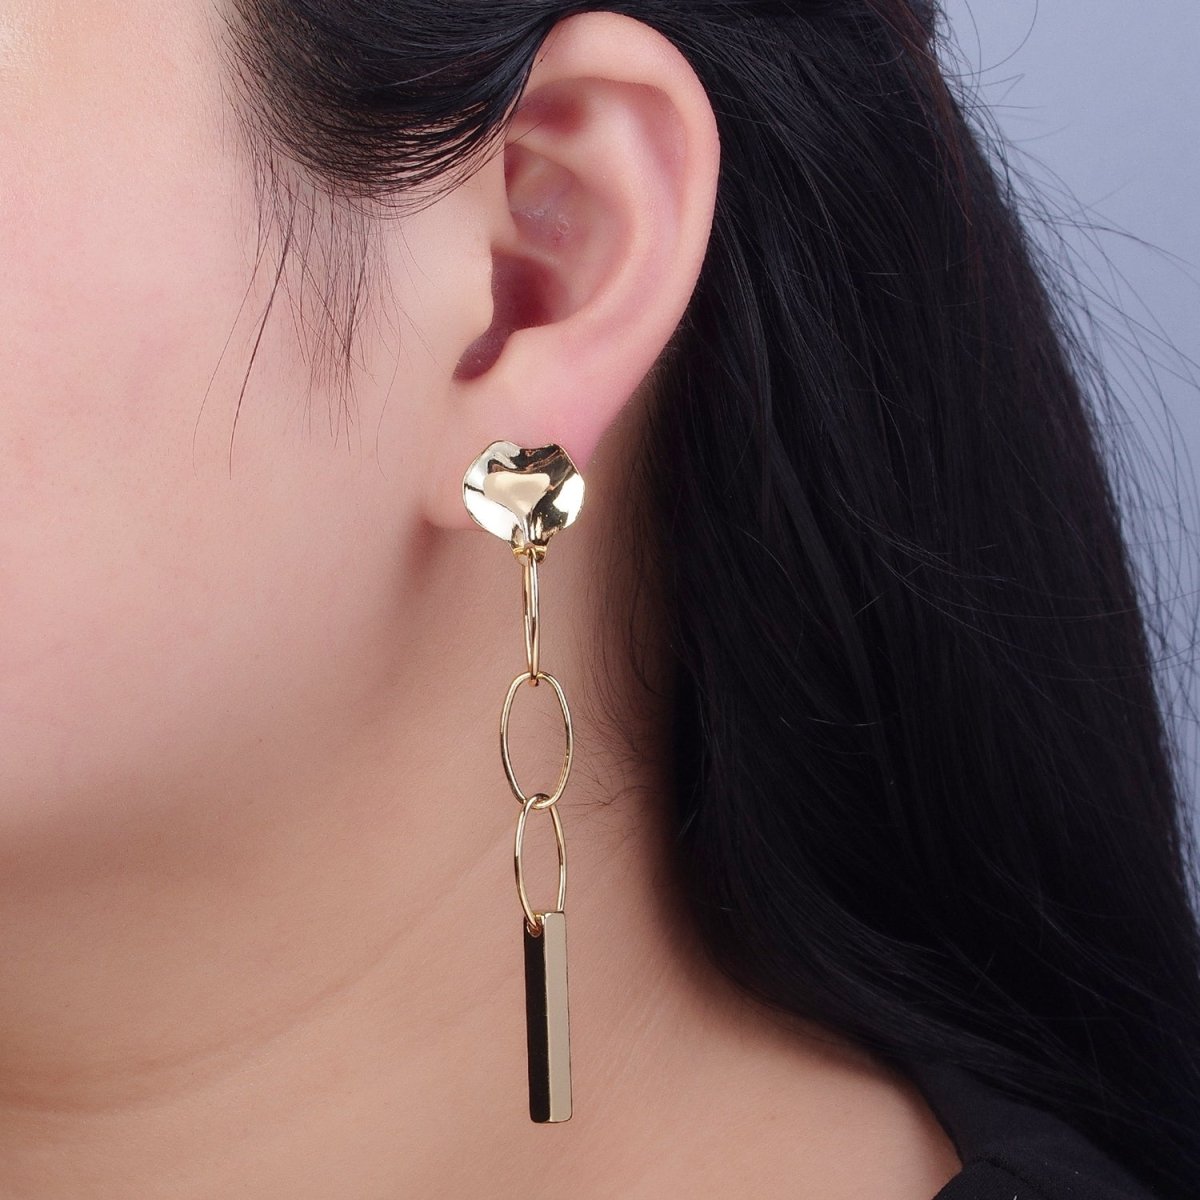 Simple Bar Drop Earrings Dainty Earrings Long Dangle Stick Earrings in Gold Oval Link Chain Earrings Everyday Earrings V-395 - DLUXCA